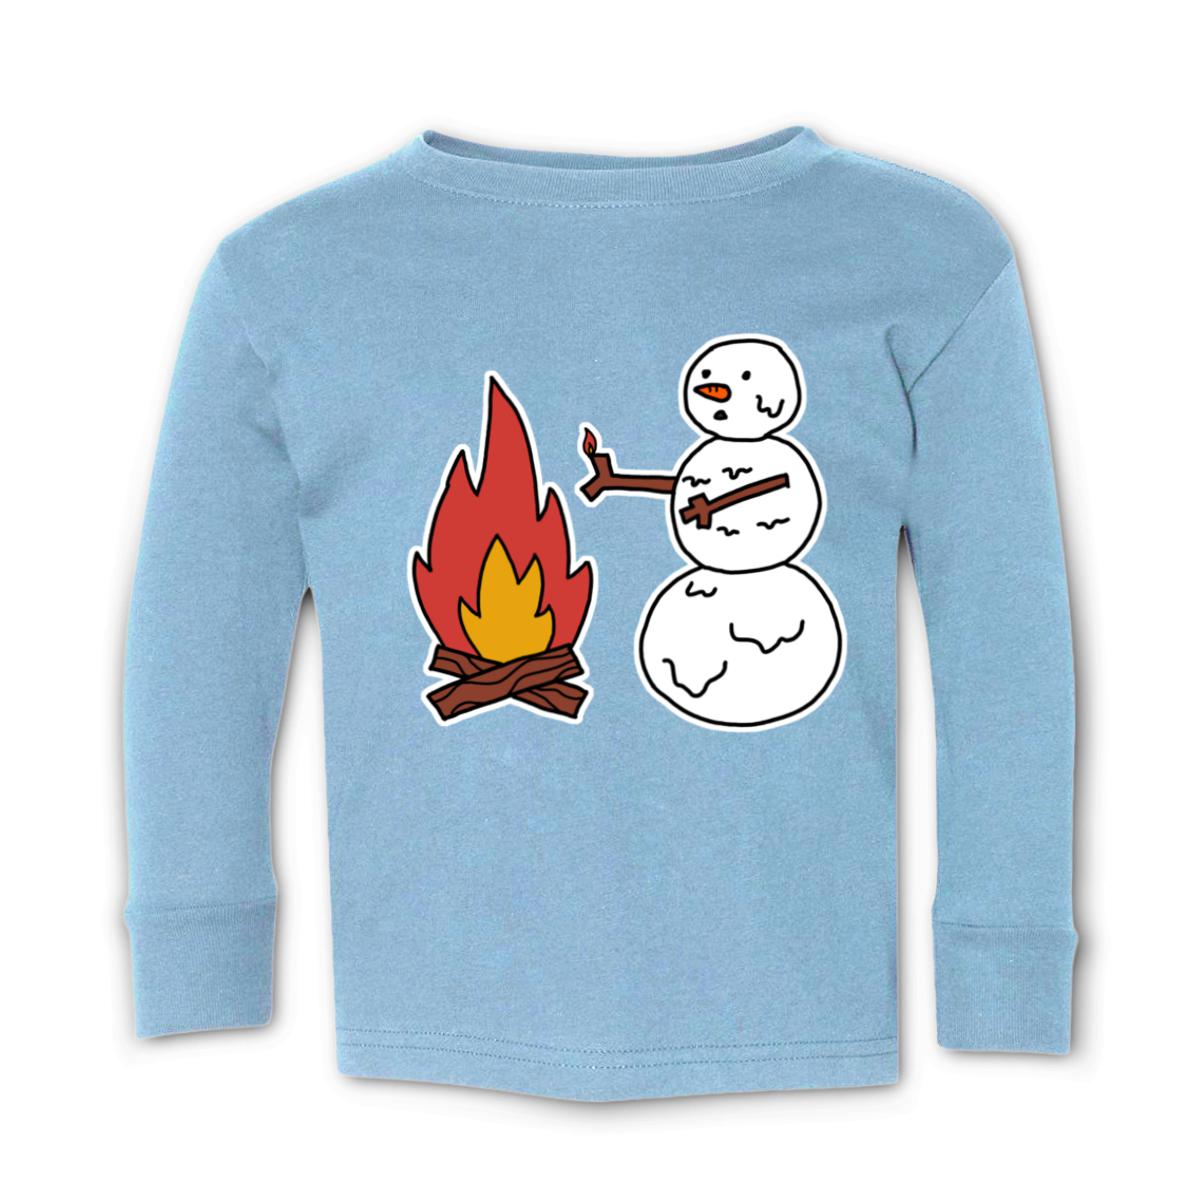 Snowman Keeping Warm Toddler Long Sleeve Tee 56T light-blue